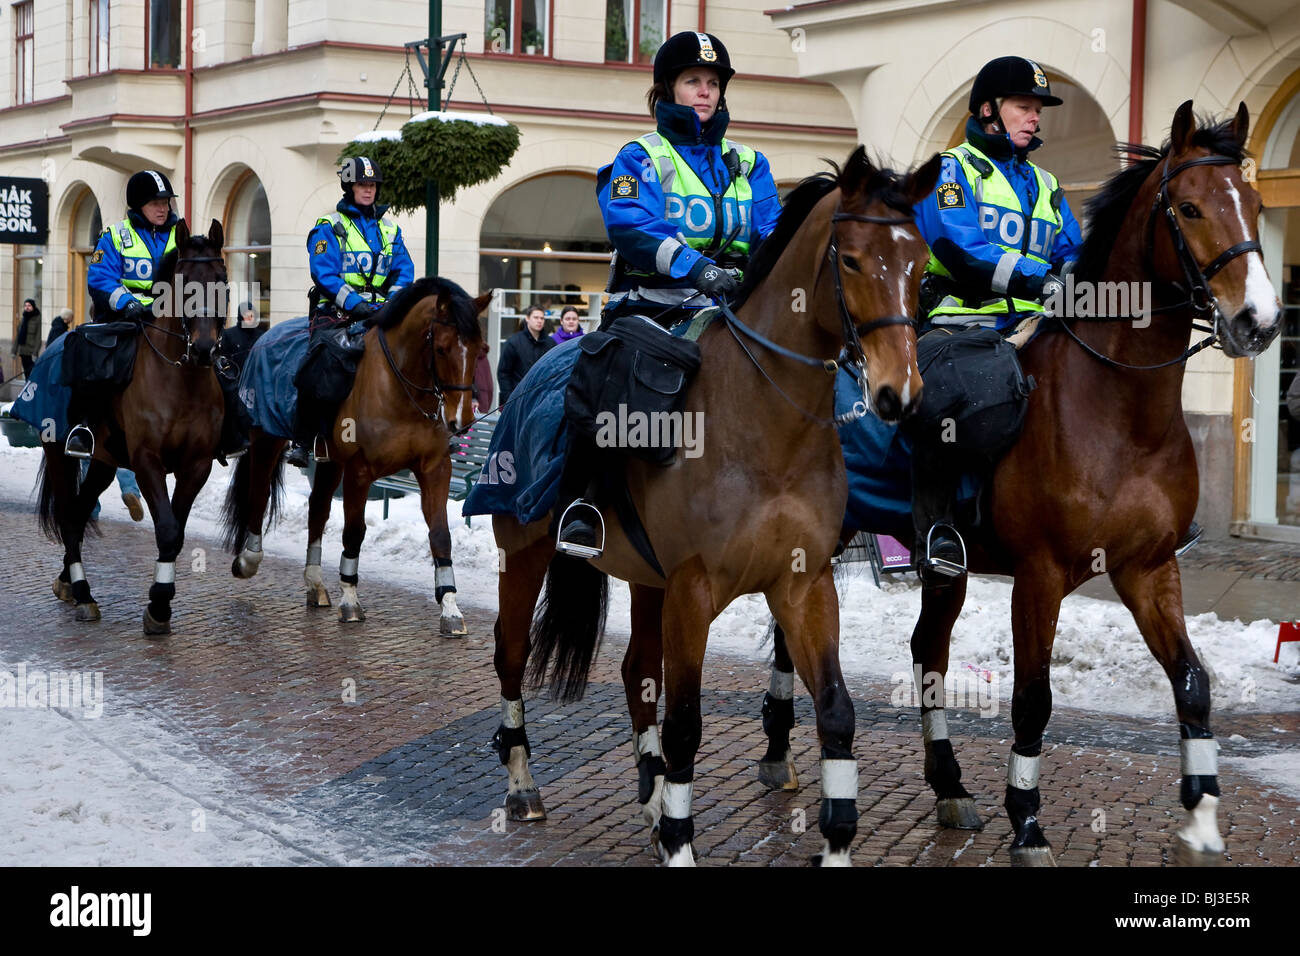 Quatre femmes policiers suédois assis à cheval, la Suède, Europe Banque D'Images